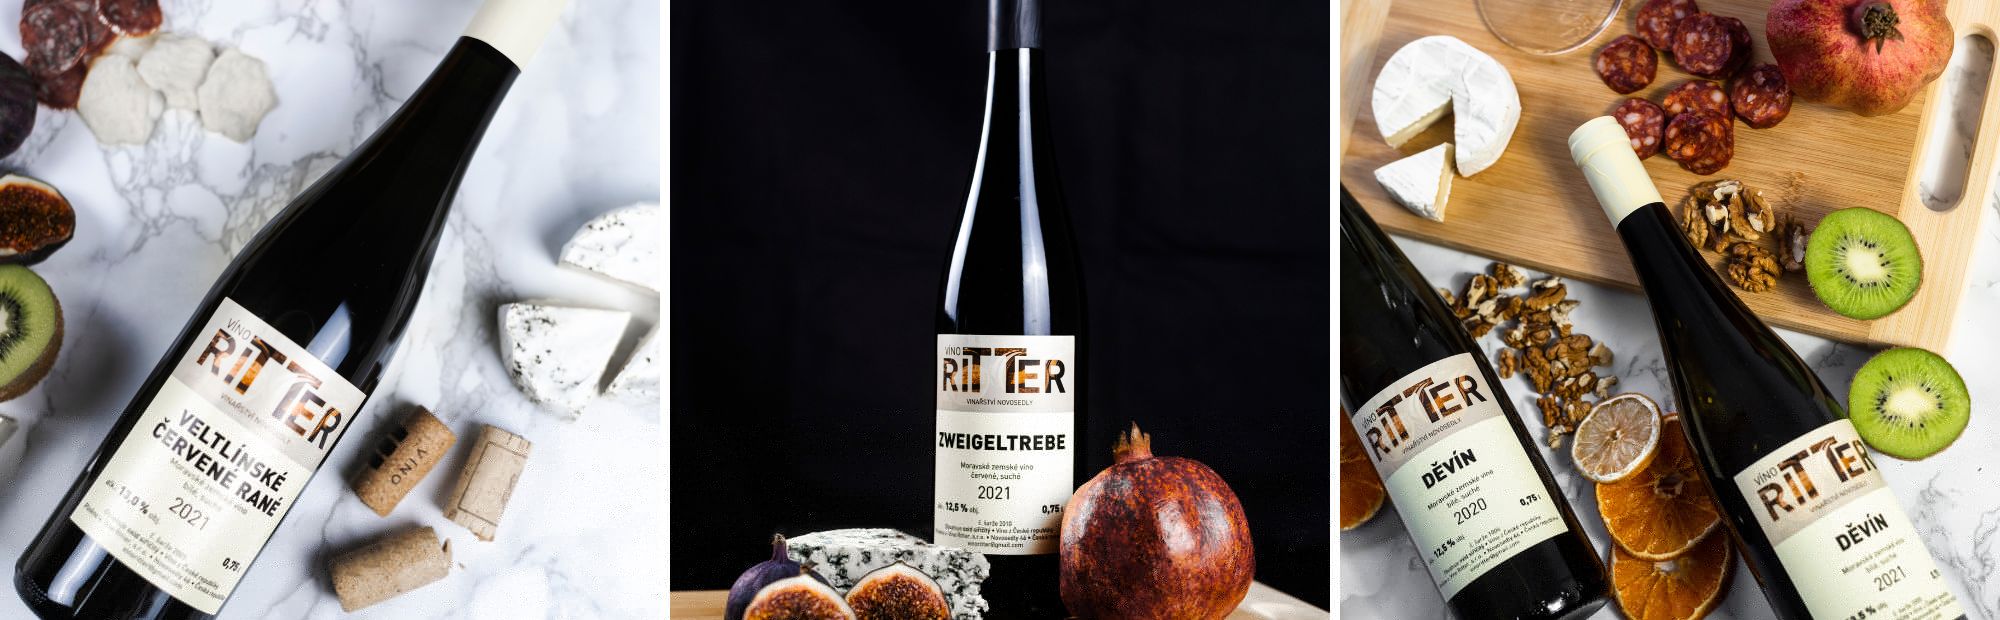 Vinařství Ritter |Novosedly